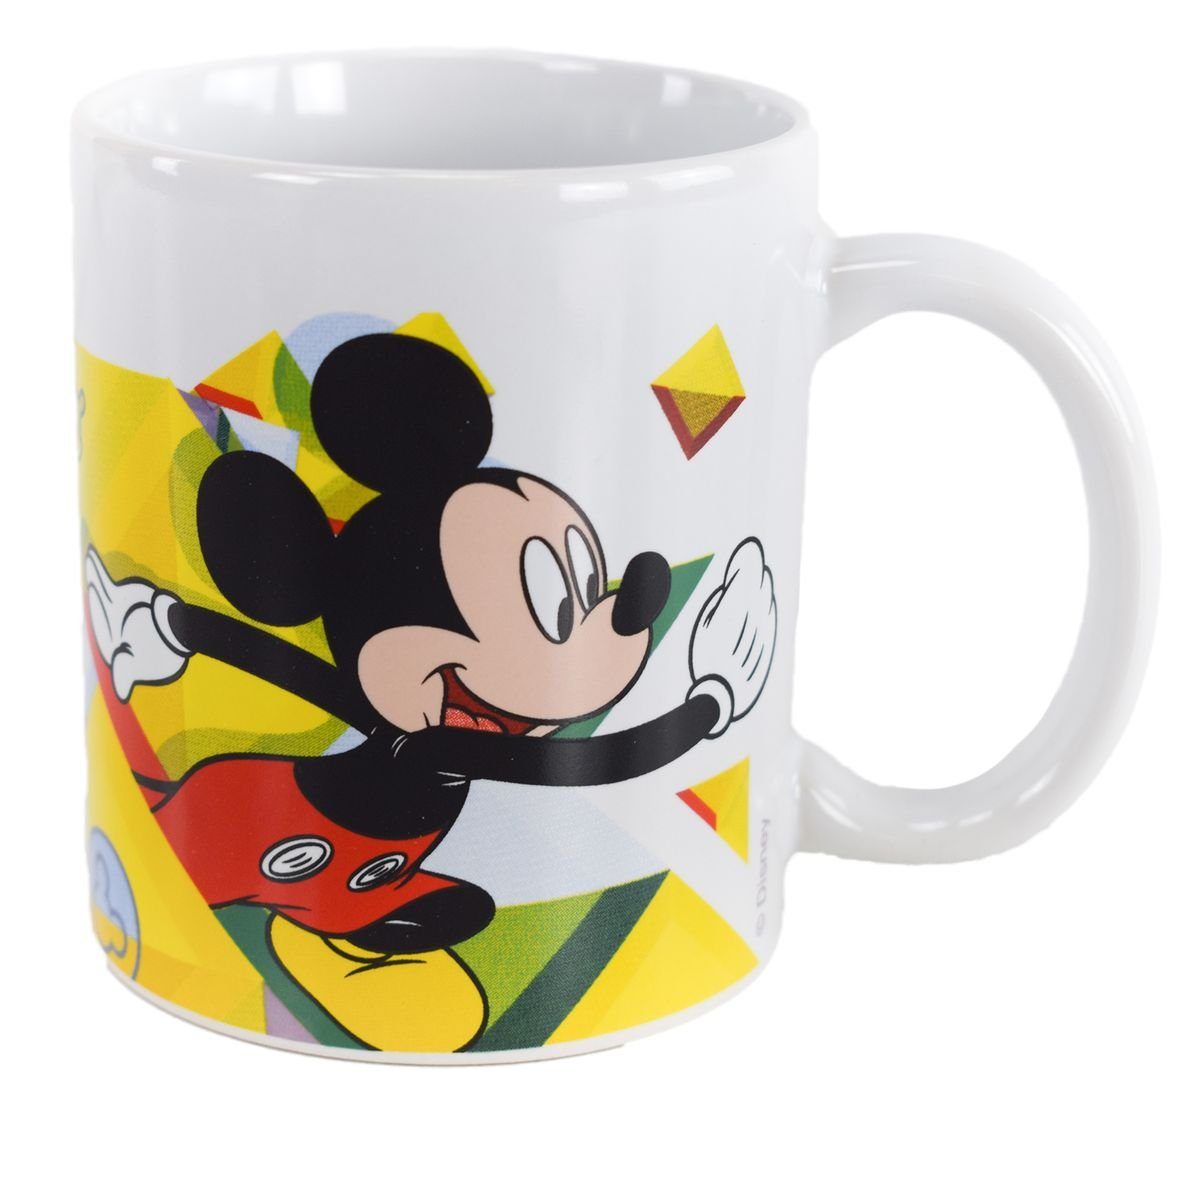 325 Tasse Mouse ml Mickey authentisches ca. Tasse mit Motiv Kindertasse, Geschenkkarton Keramik, in Stor Design